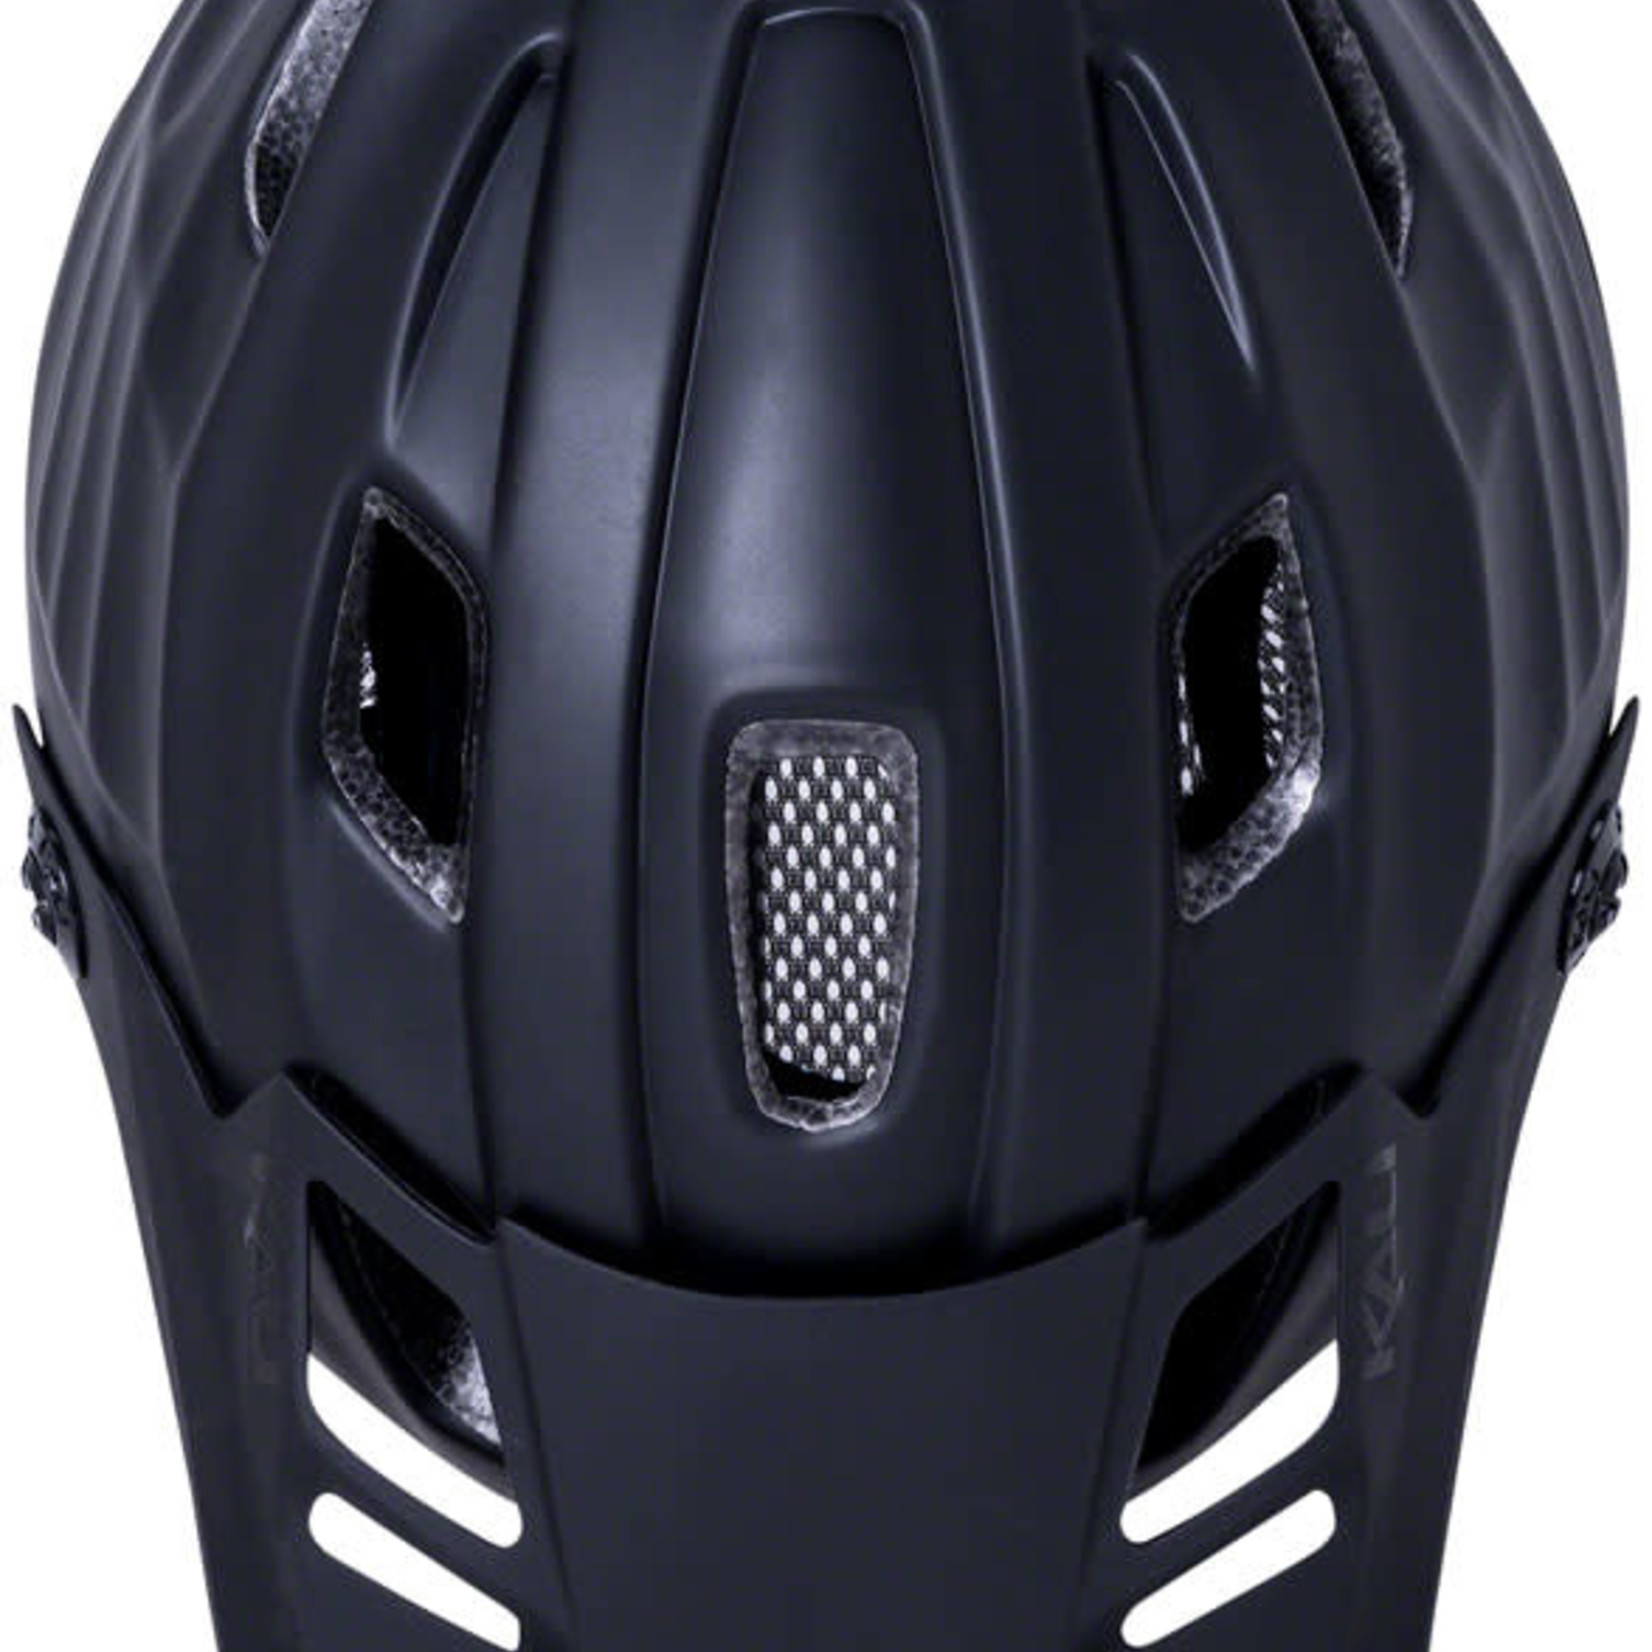 Kali Protectives Kali Protectives Maya 3.0 Helmet - Solid Matte Black/Black, Large/X-Large